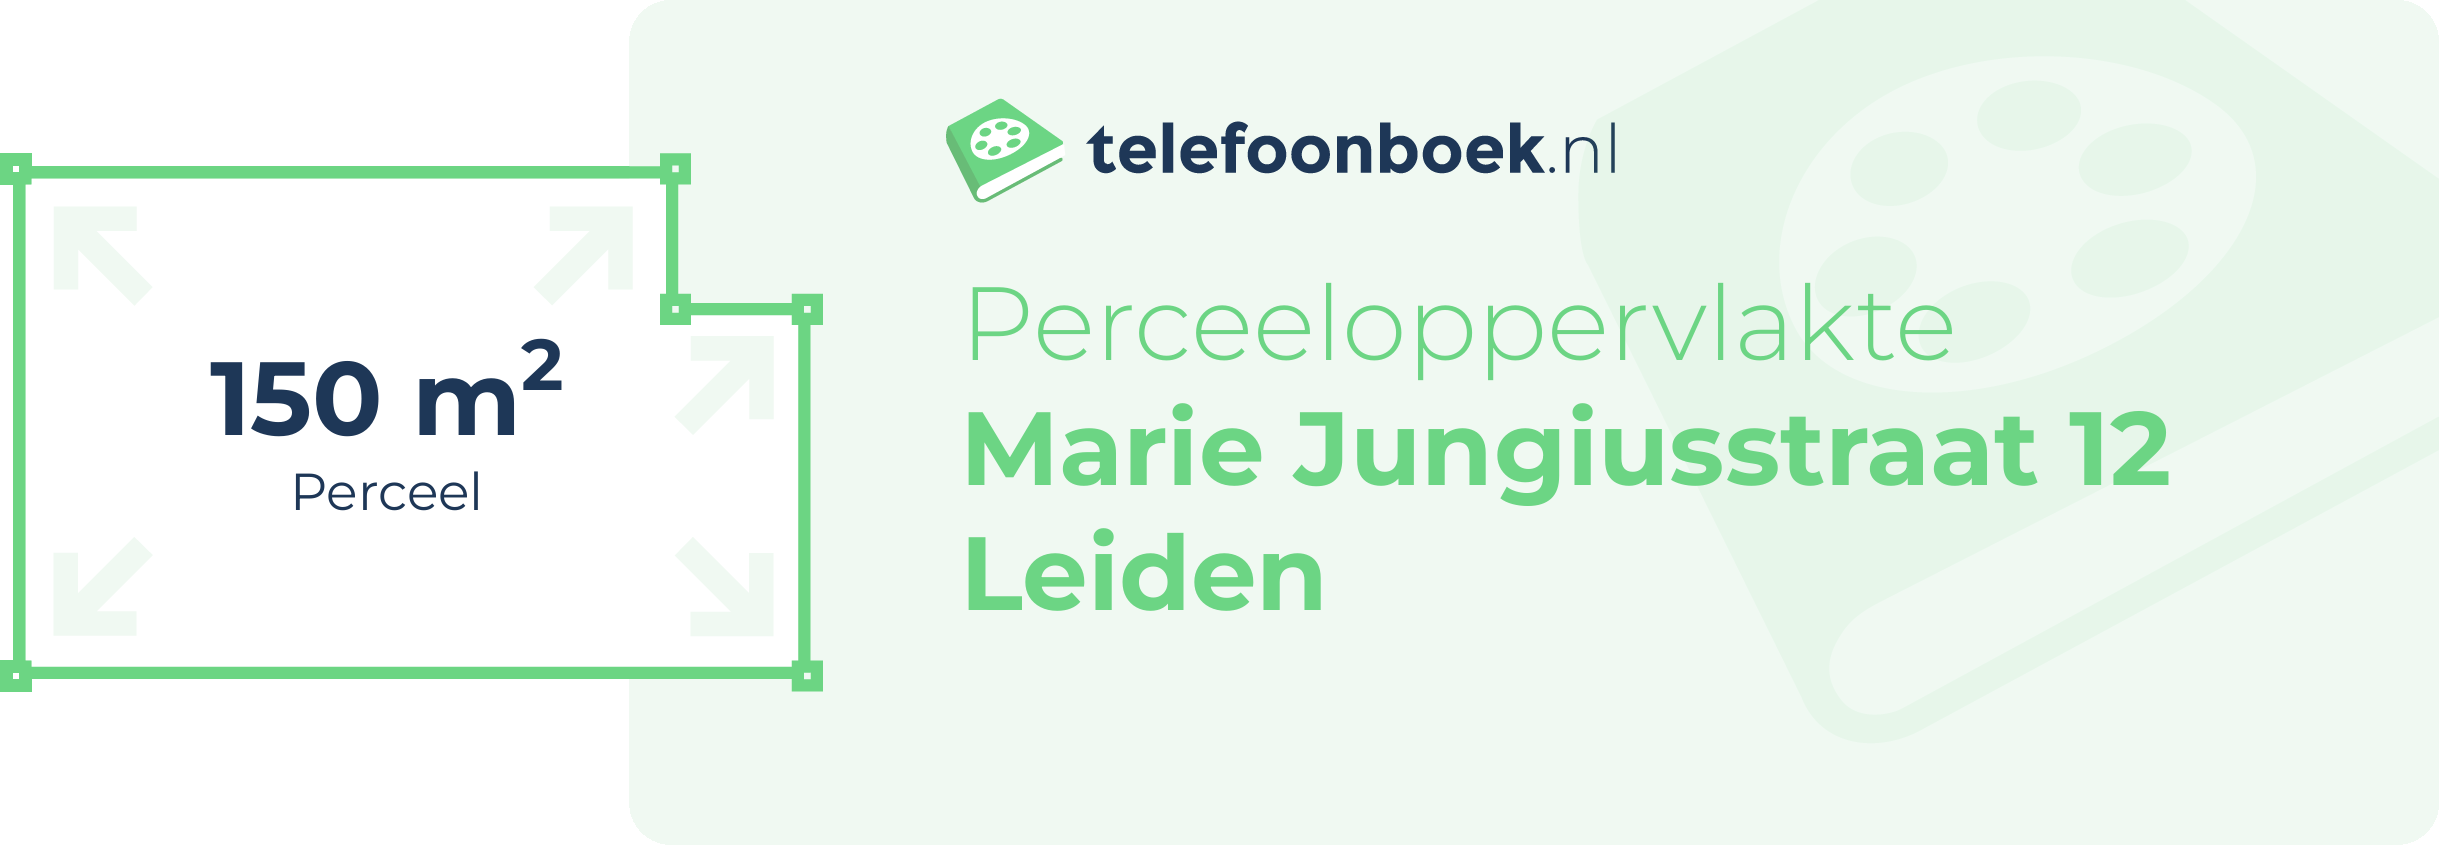 Perceeloppervlakte Marie Jungiusstraat 12 Leiden